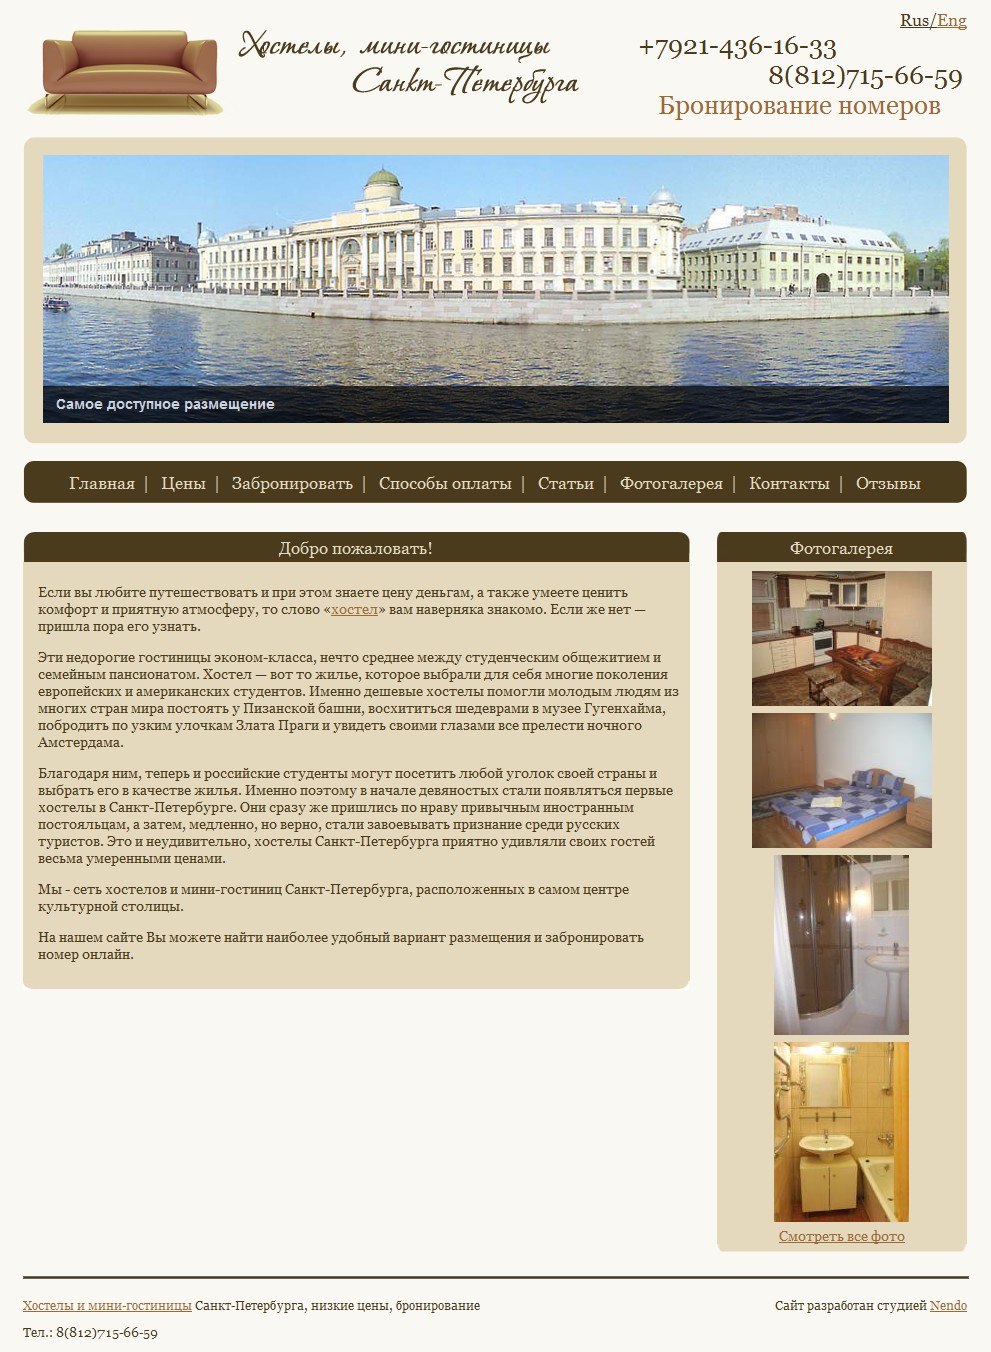 Хостелы и мини-гостиницы Санкт-Петербурга